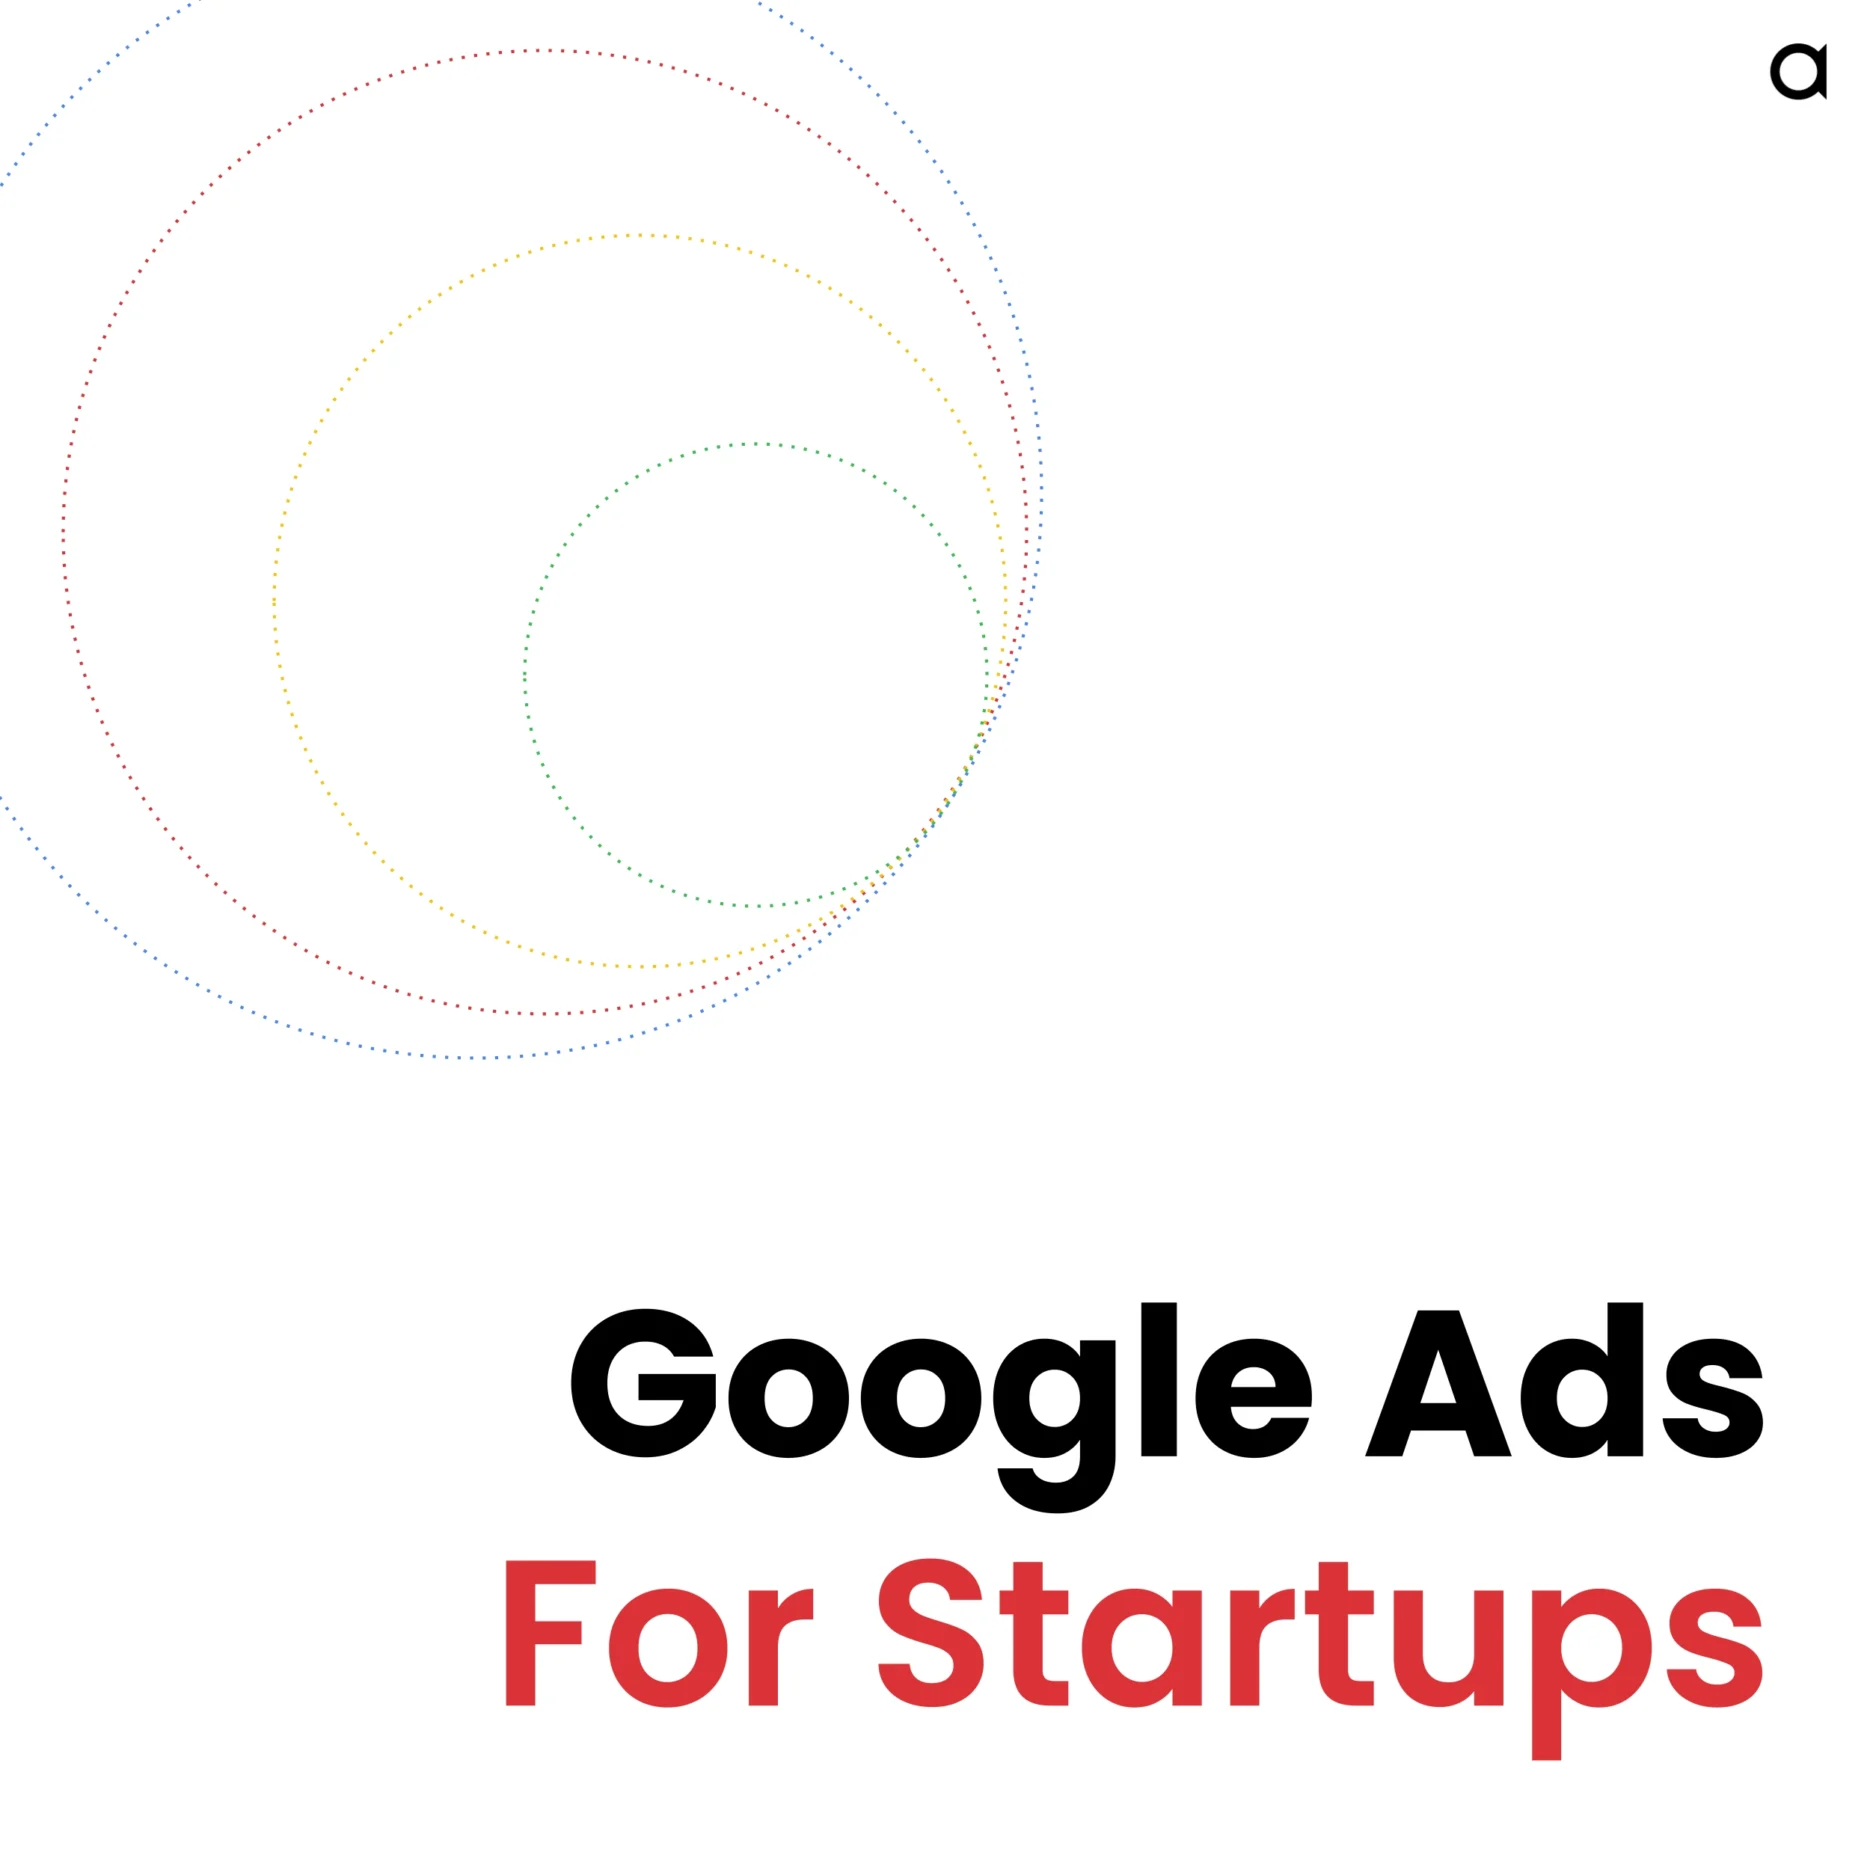 Google Ads For Startups